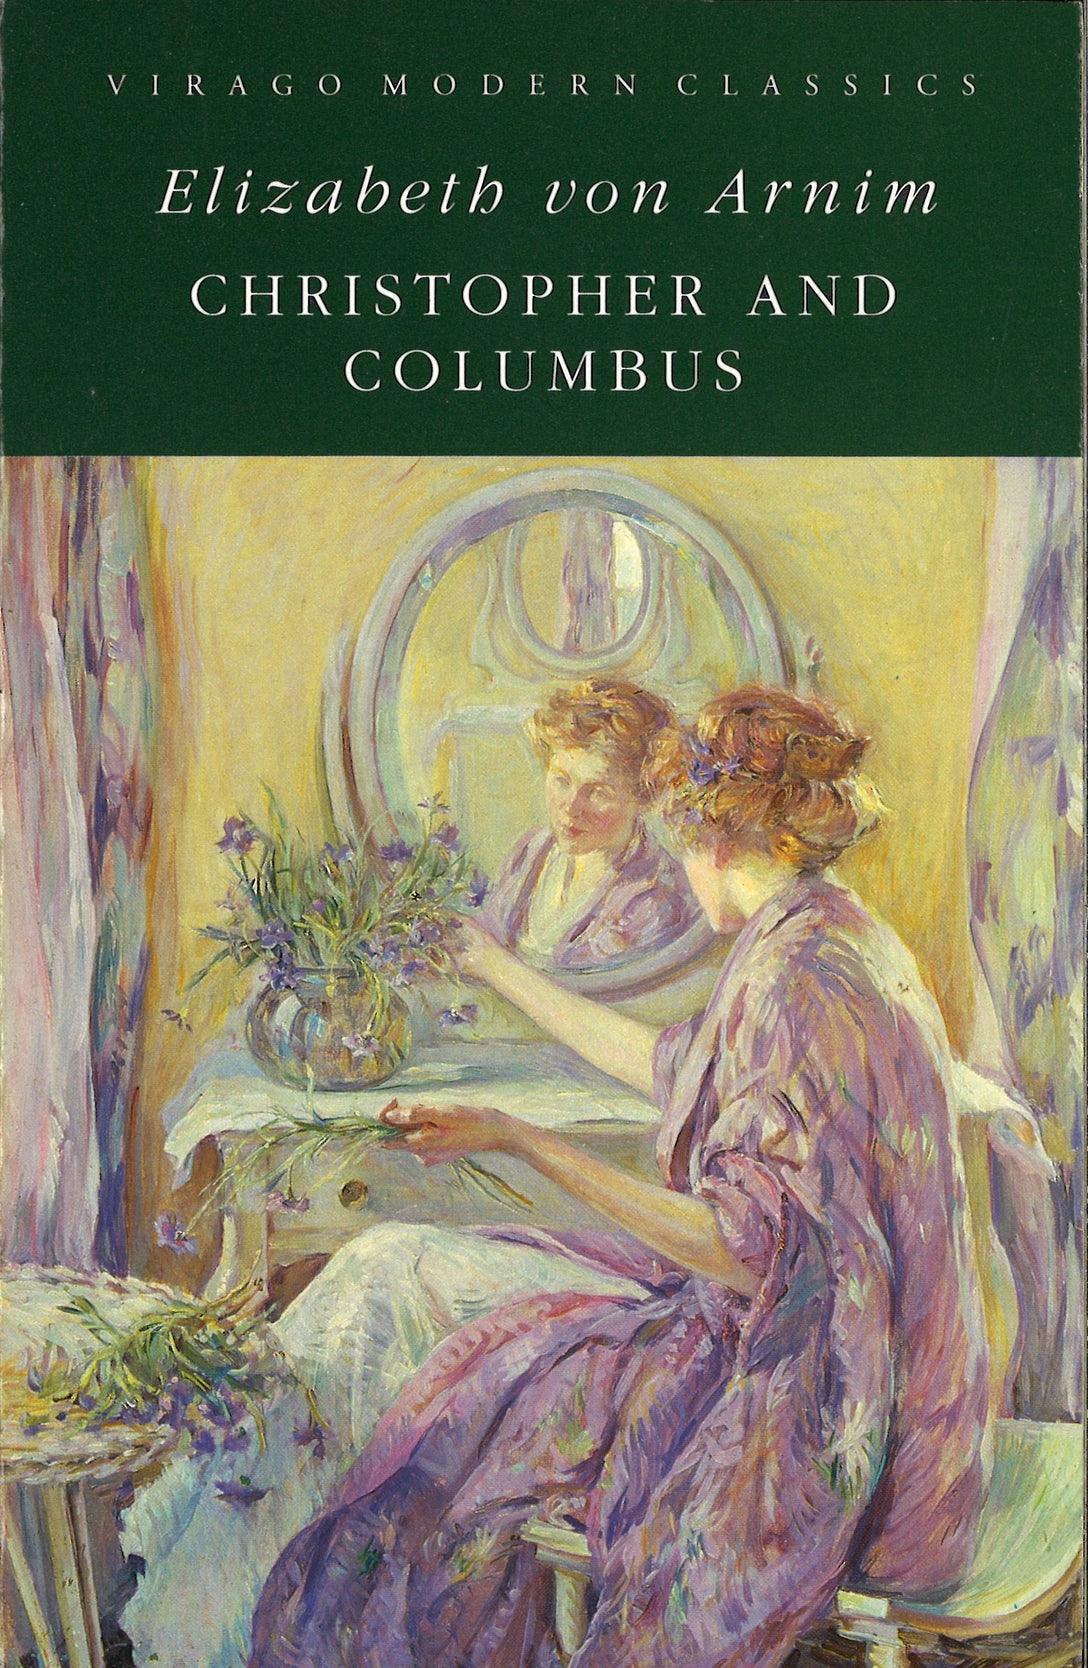 Christopher And Columbus by Elizabeth von Arnim